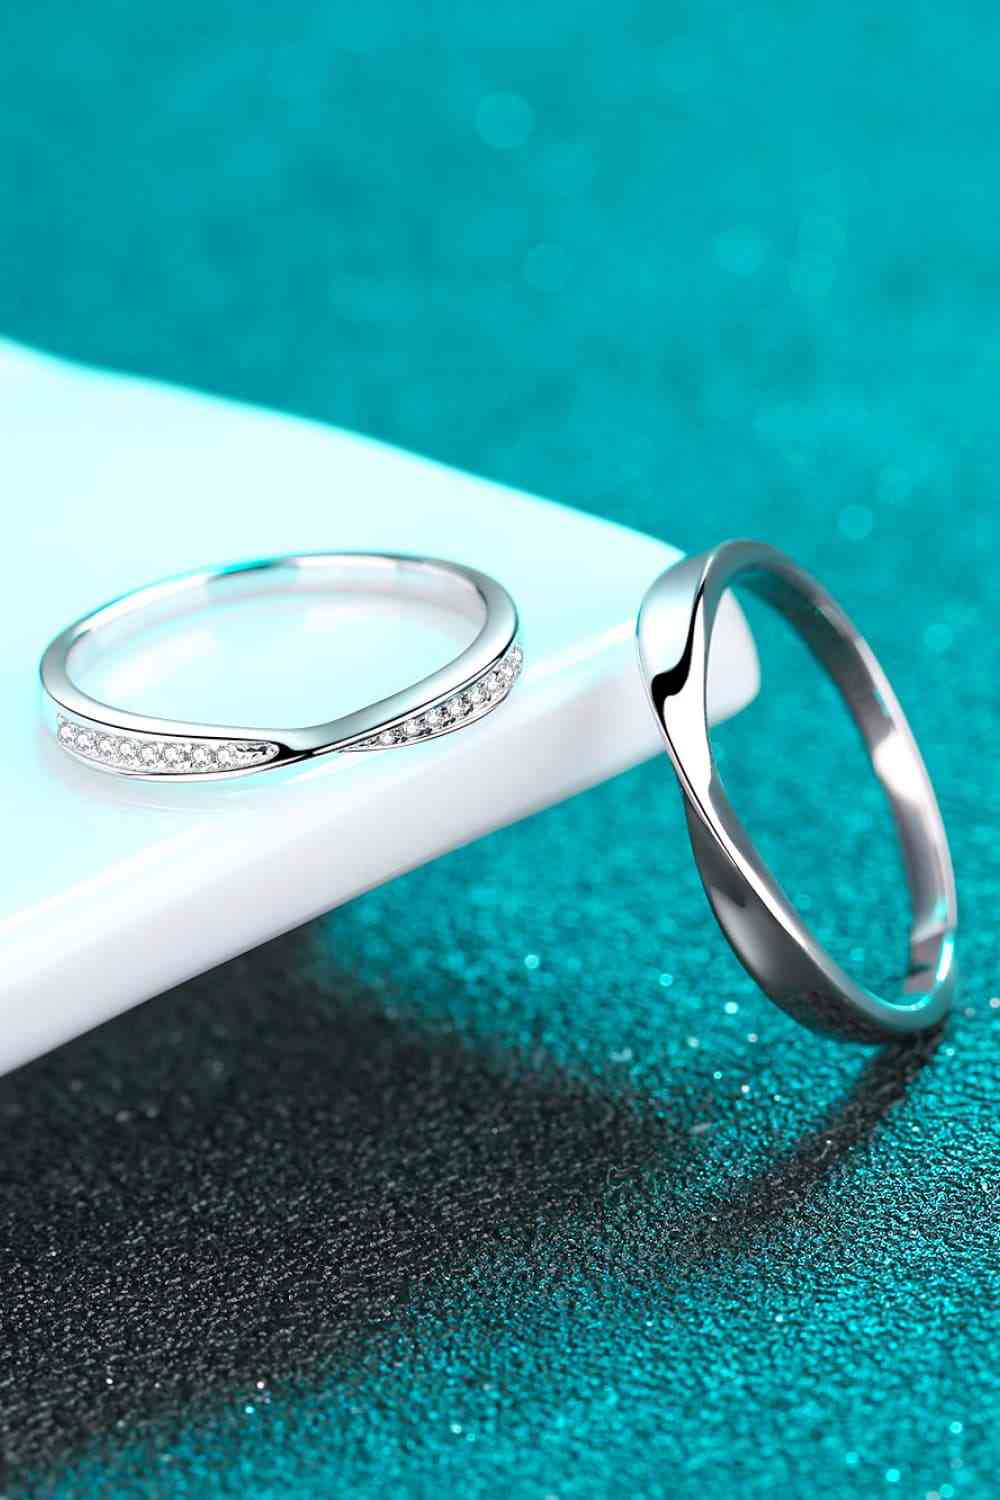 Minimalist 925 Sterling Silver Ring - Men or Women